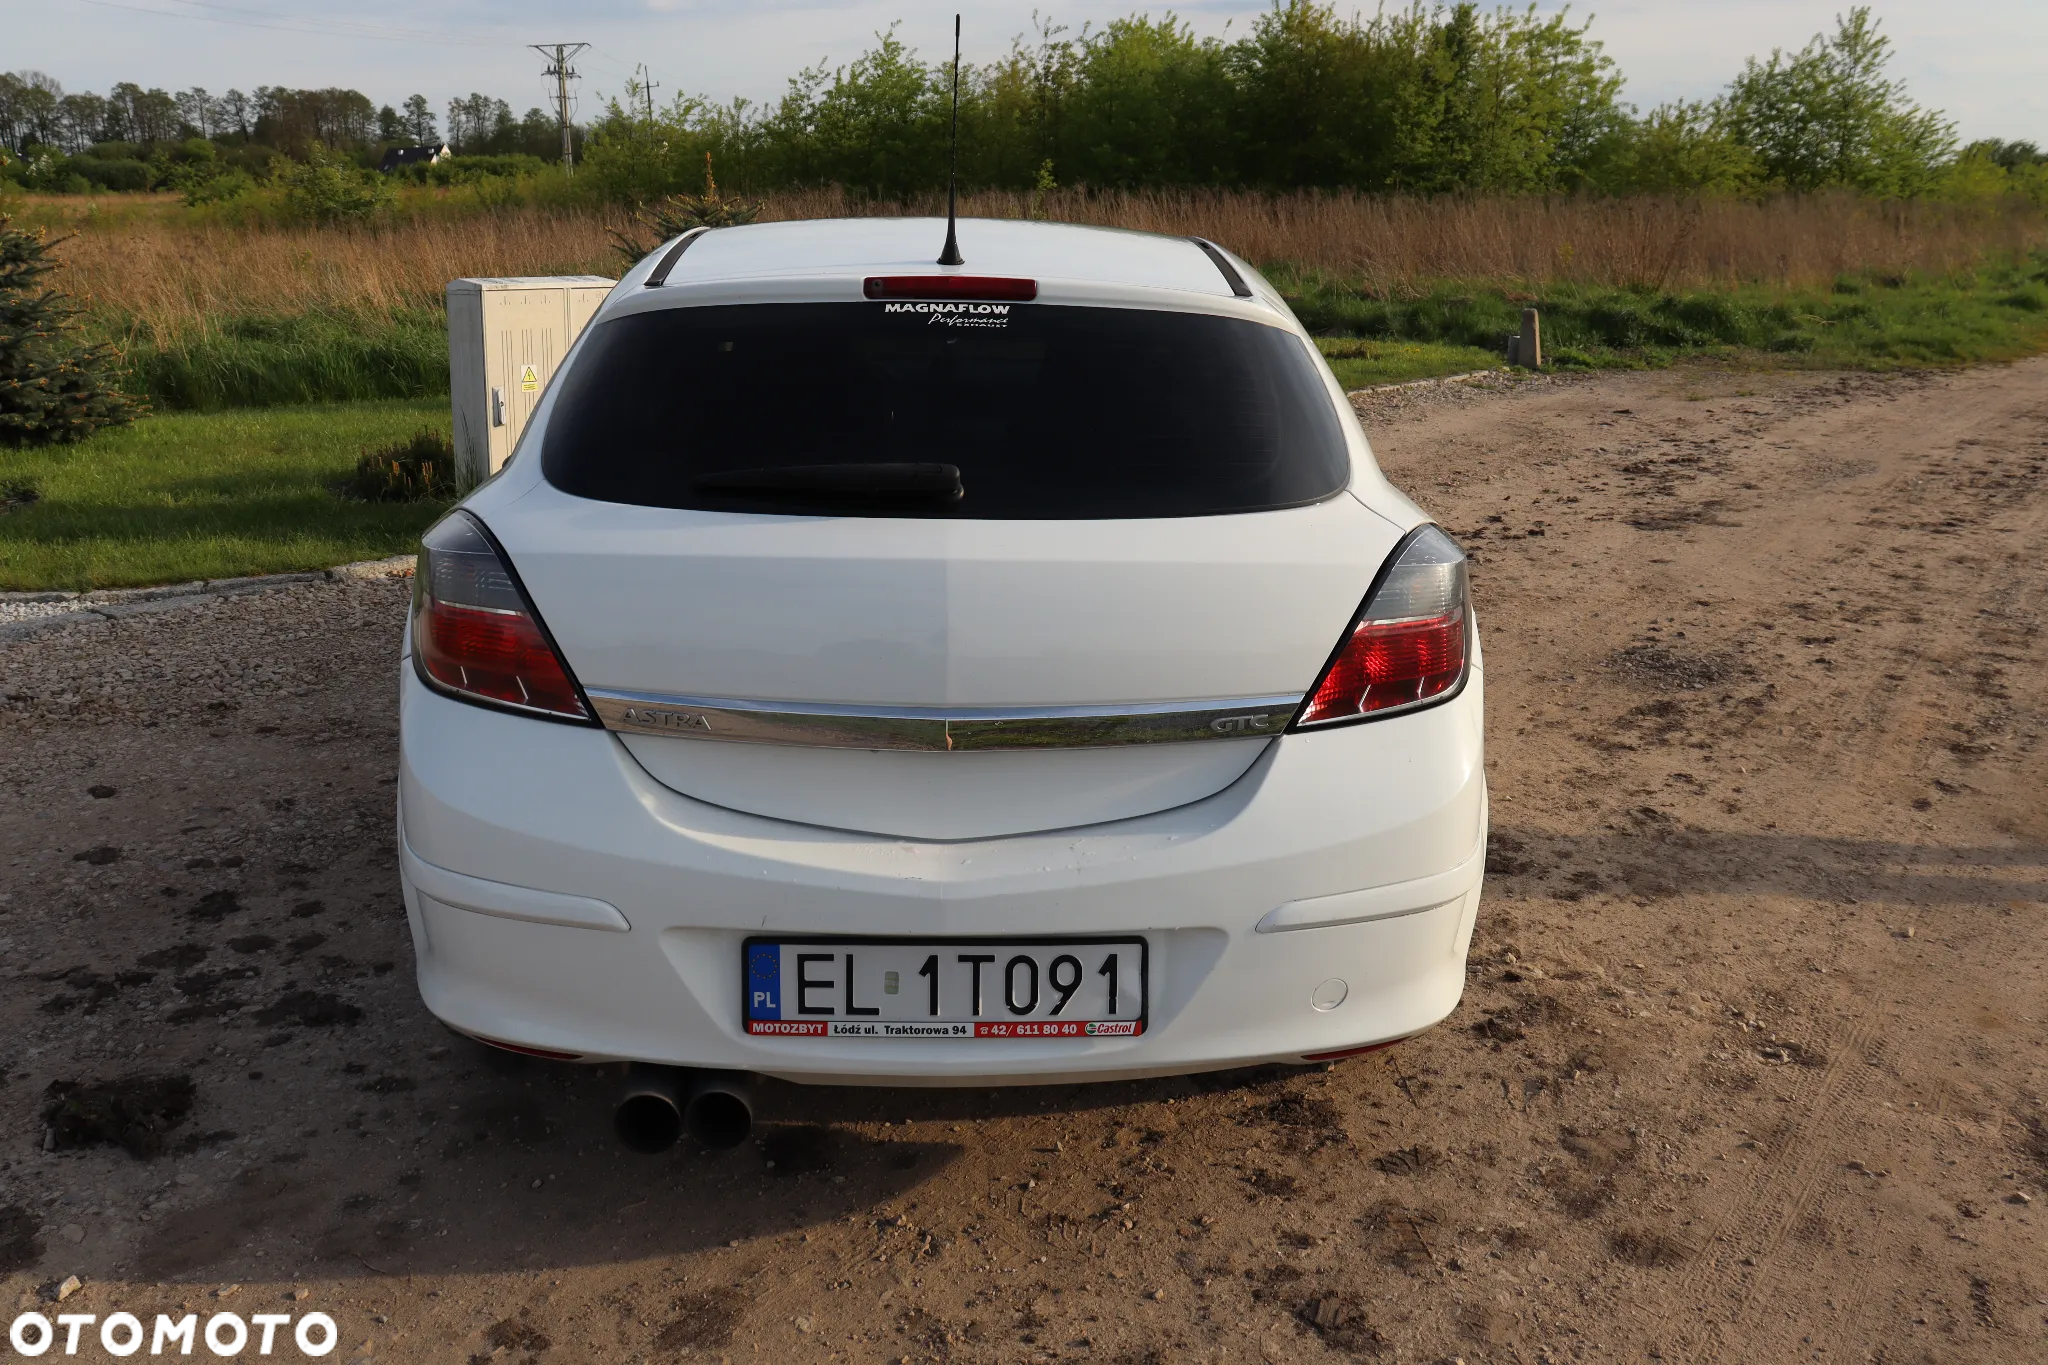 Opel Astra III GTC 1.6 Enjoy - 6